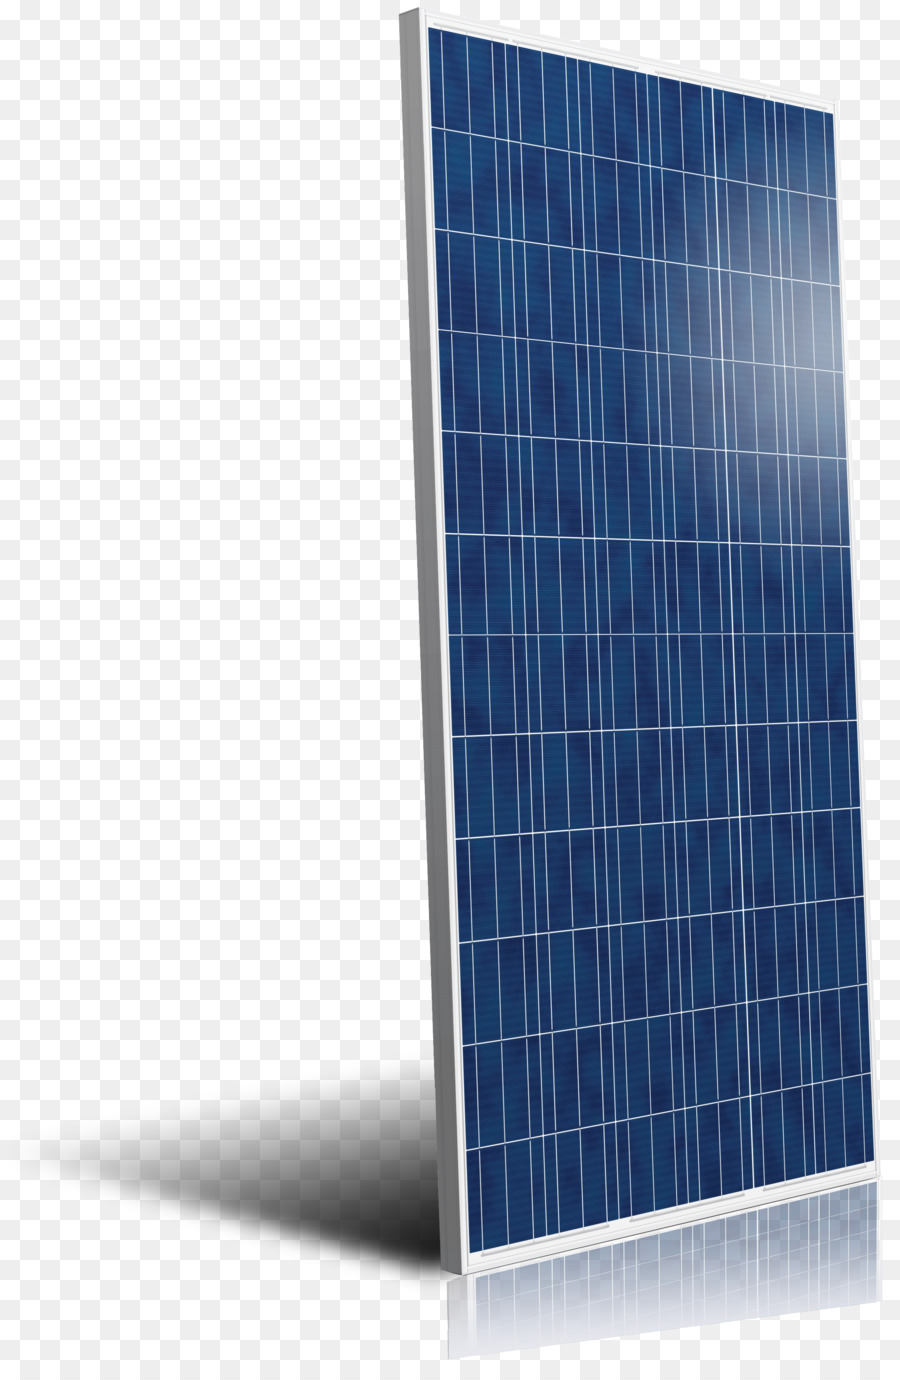 Energia solare, pannelli solari energia solare SunPower - pannello solare